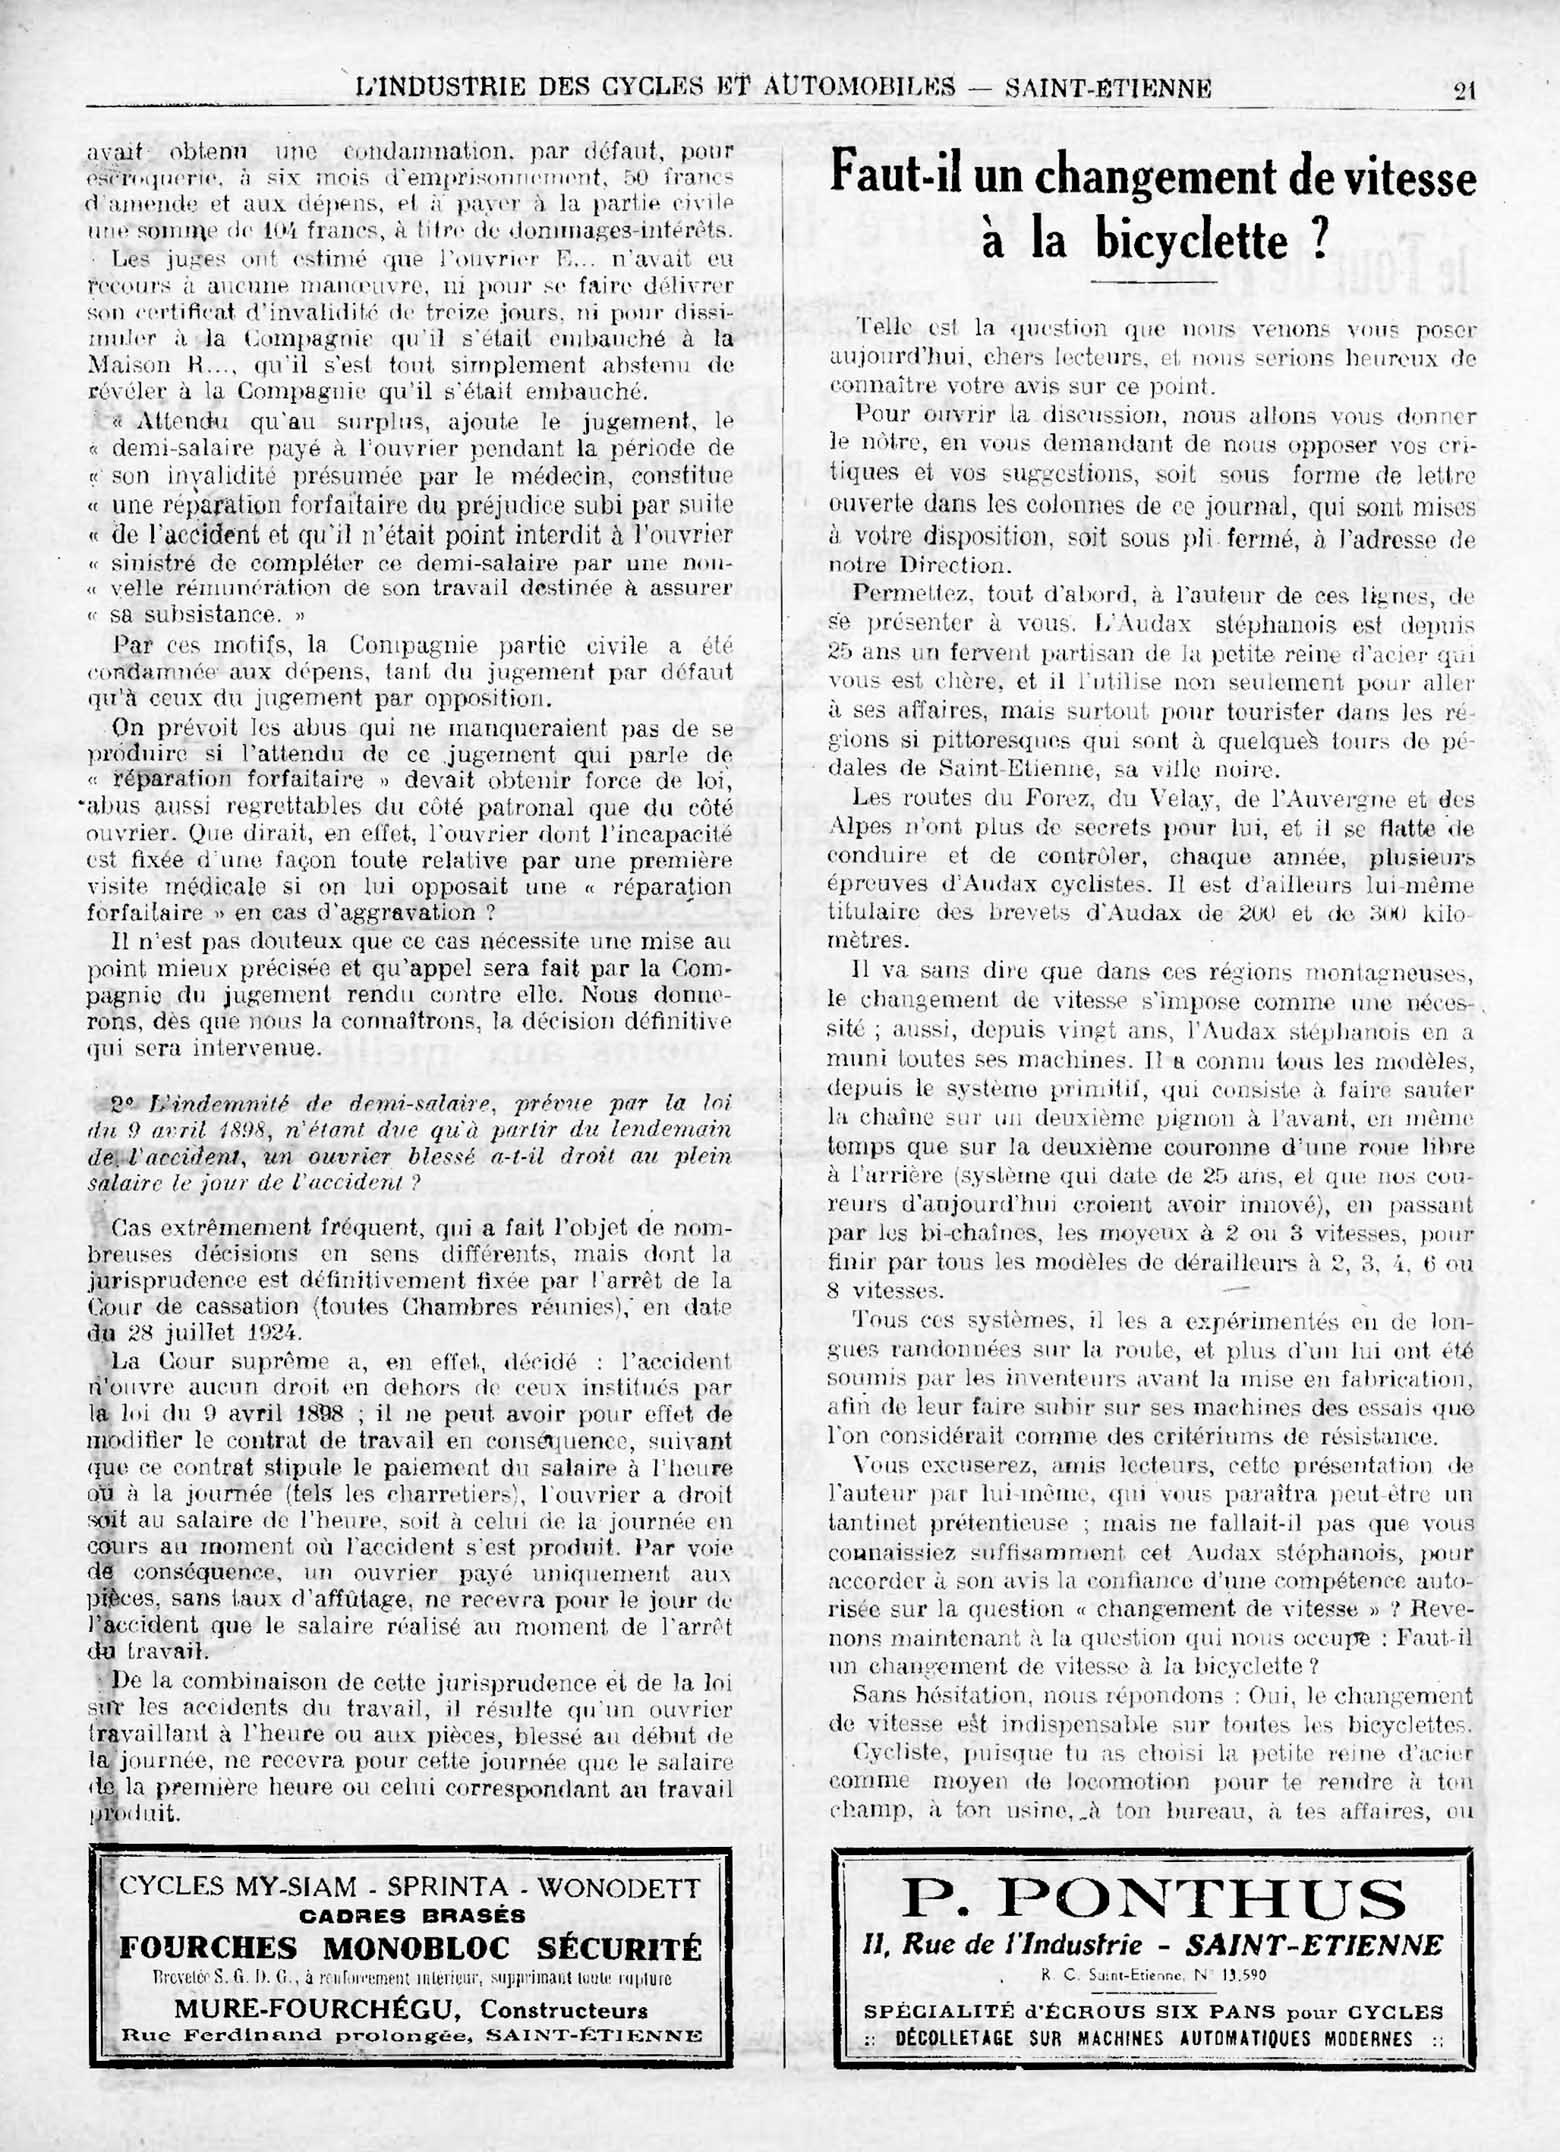 L'Industrie des Cycles et Automobiles July 1925 - Faut-il un changement de vitesse scan 1 main image